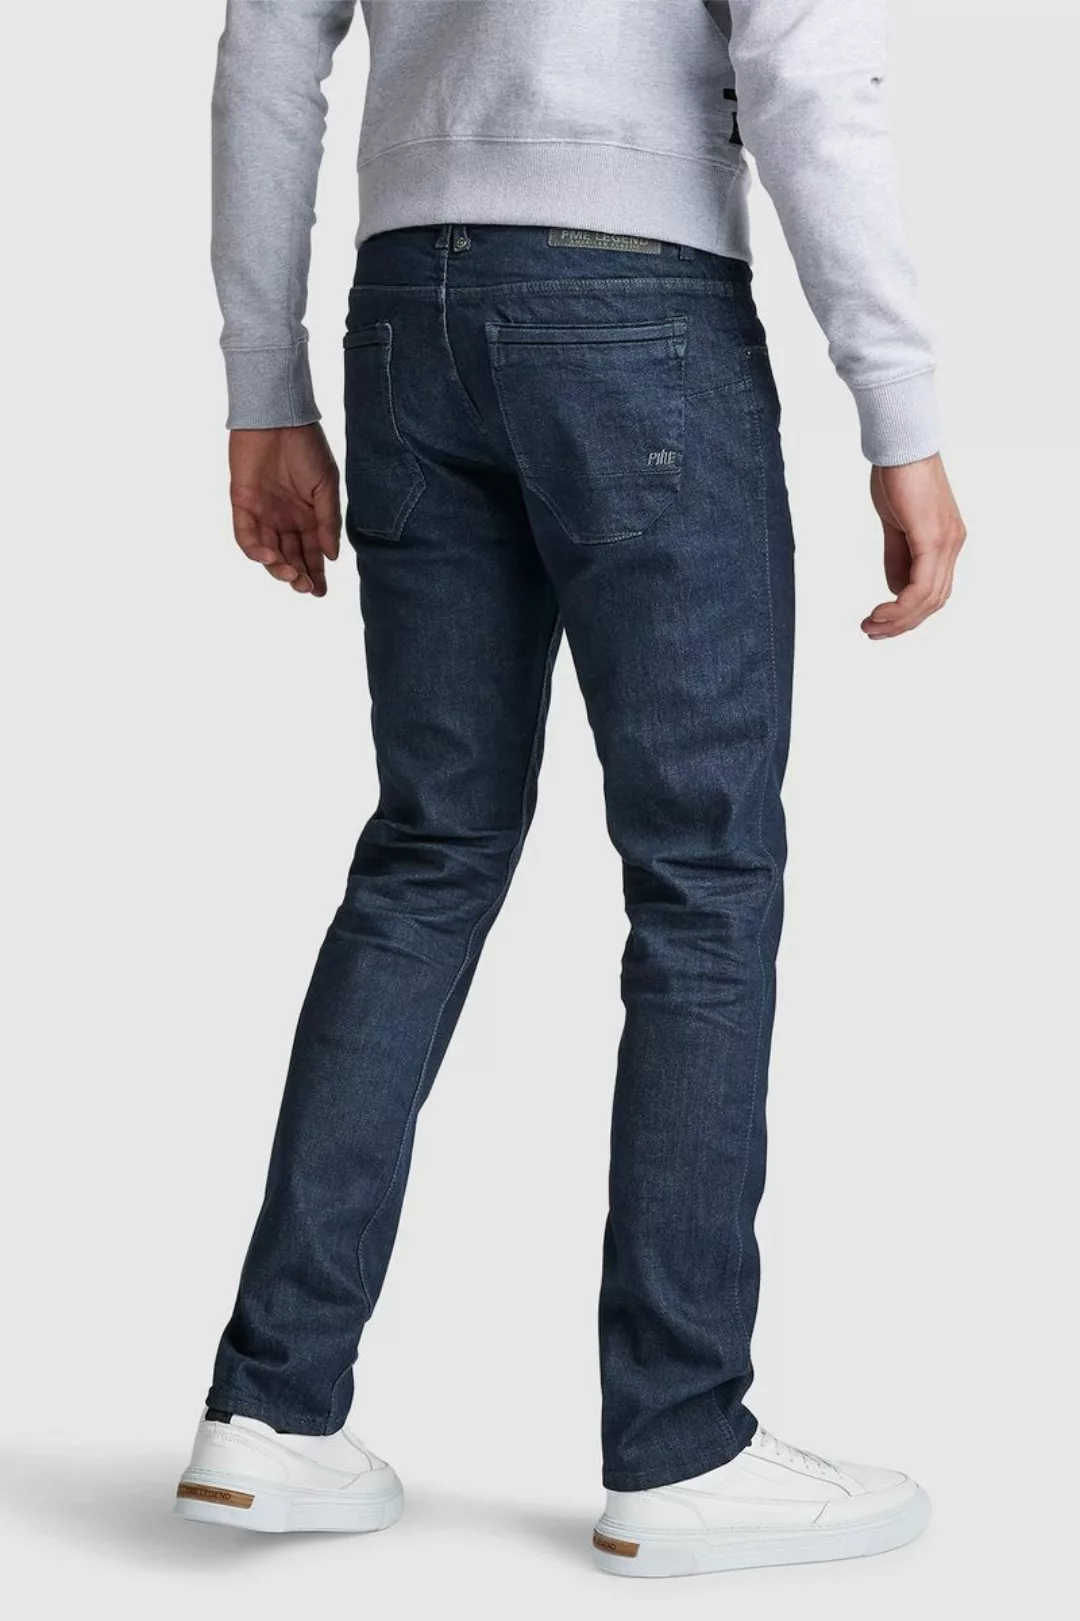 PME Legend Nightflight Jeans Blau LRW - Größe W 30 - L 34 günstig online kaufen